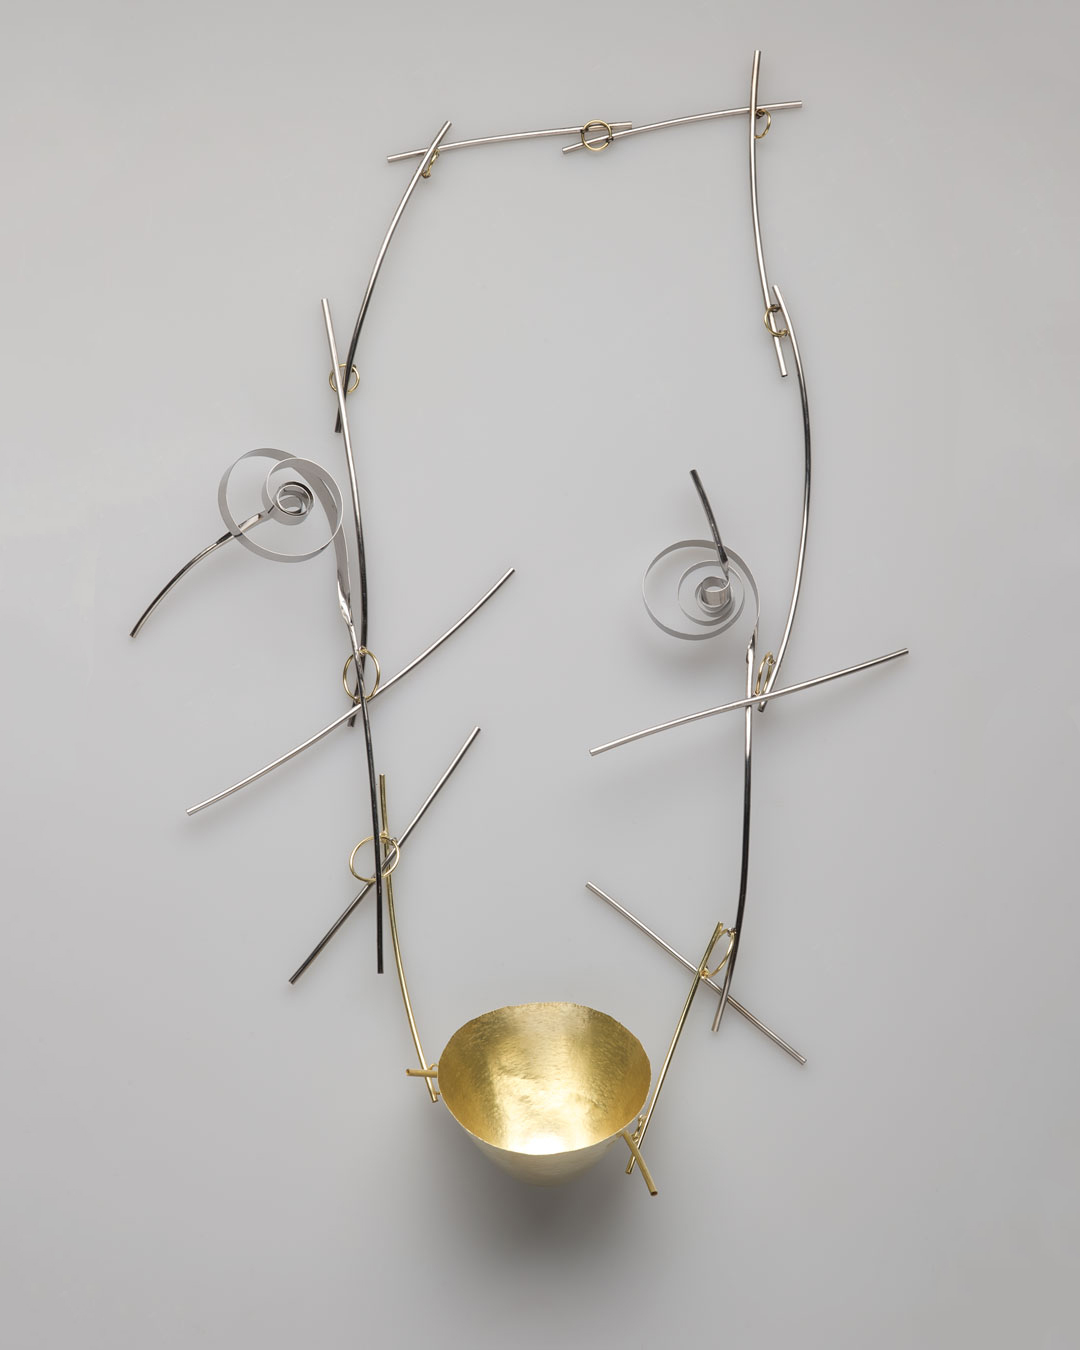 Andrea Wippermann, Japanischer Garten I (Japanese Garden I), 2011, necklace; gold, high-grade steel, 360 x 210 x 50 mm, €4600